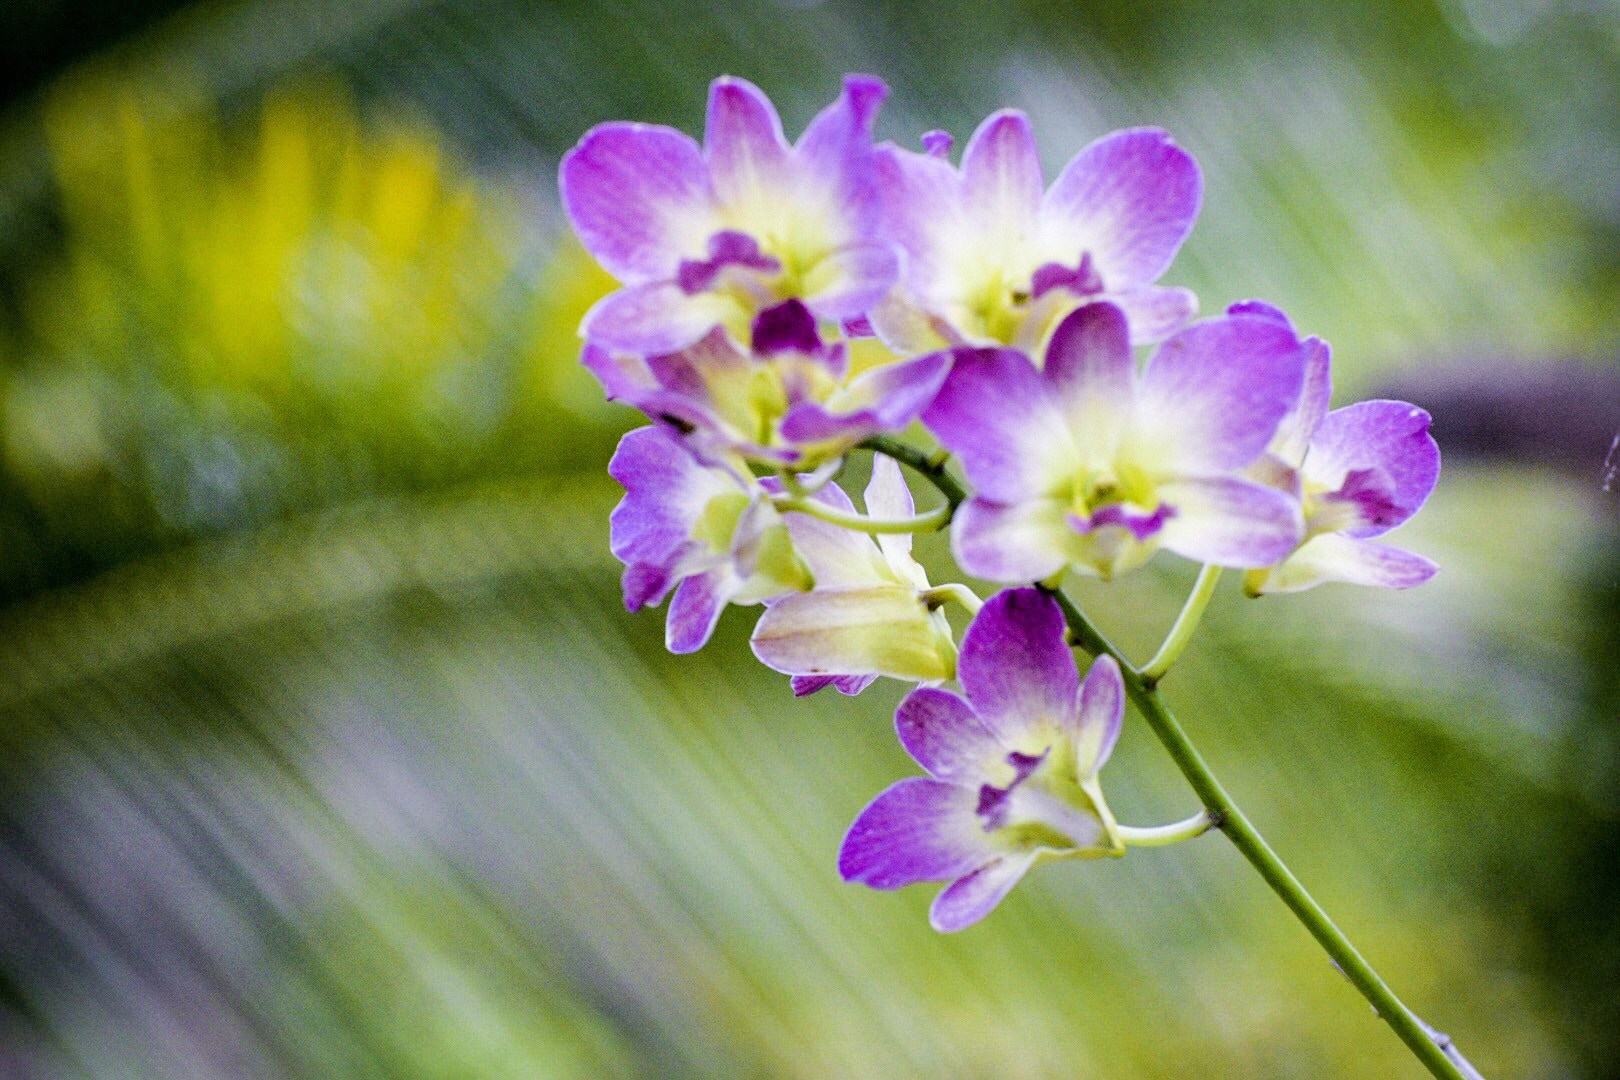 Nikon D5500 + Nikon AF-S Nikkor 70-300mm F4.5-5.6G VR sample photo. Amazing orchids photography